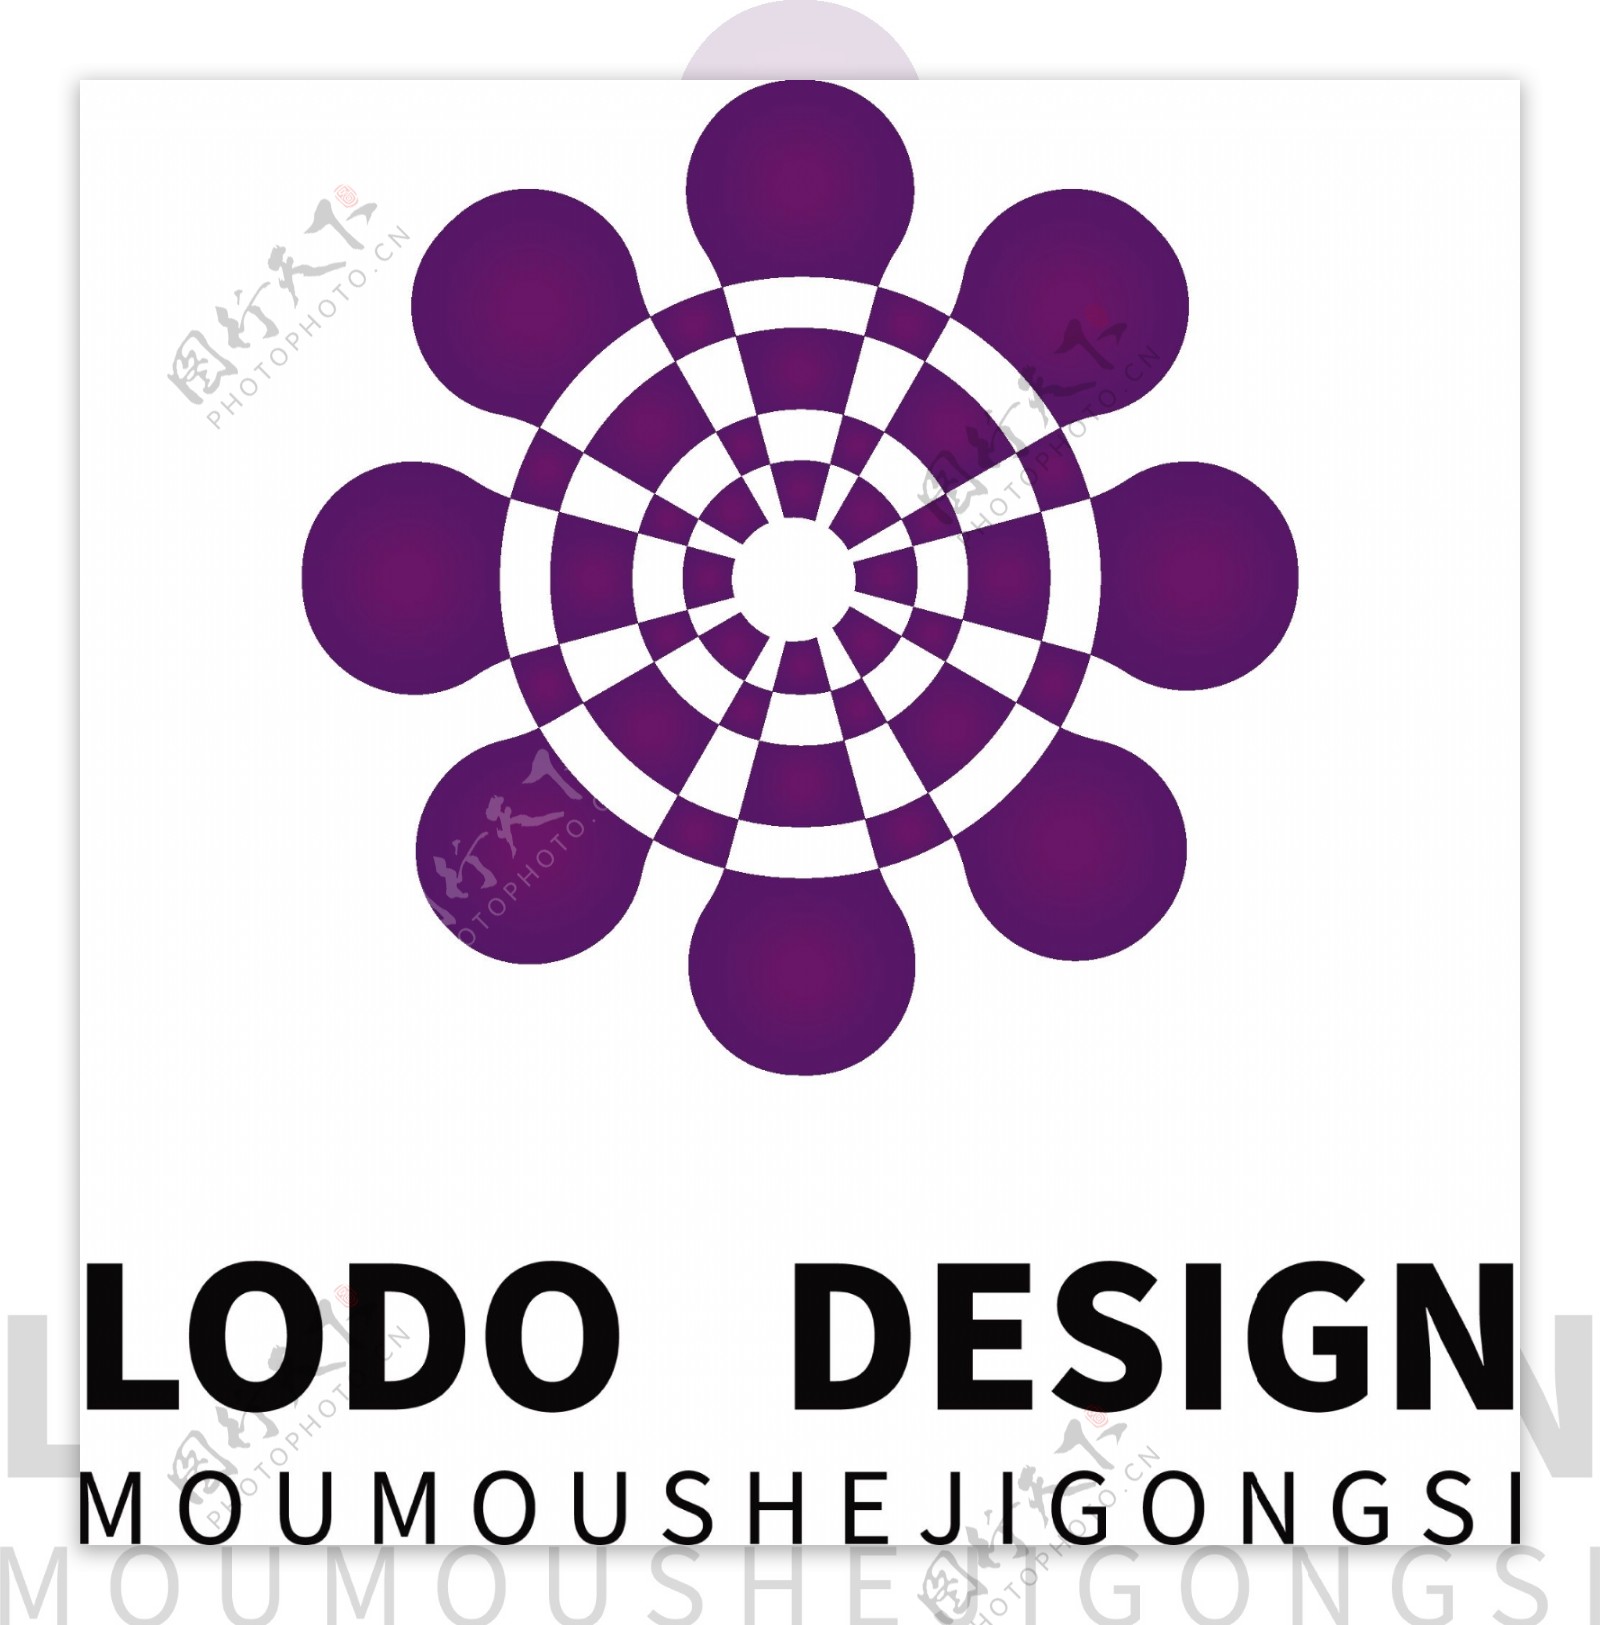 原创多媒体紫色logo